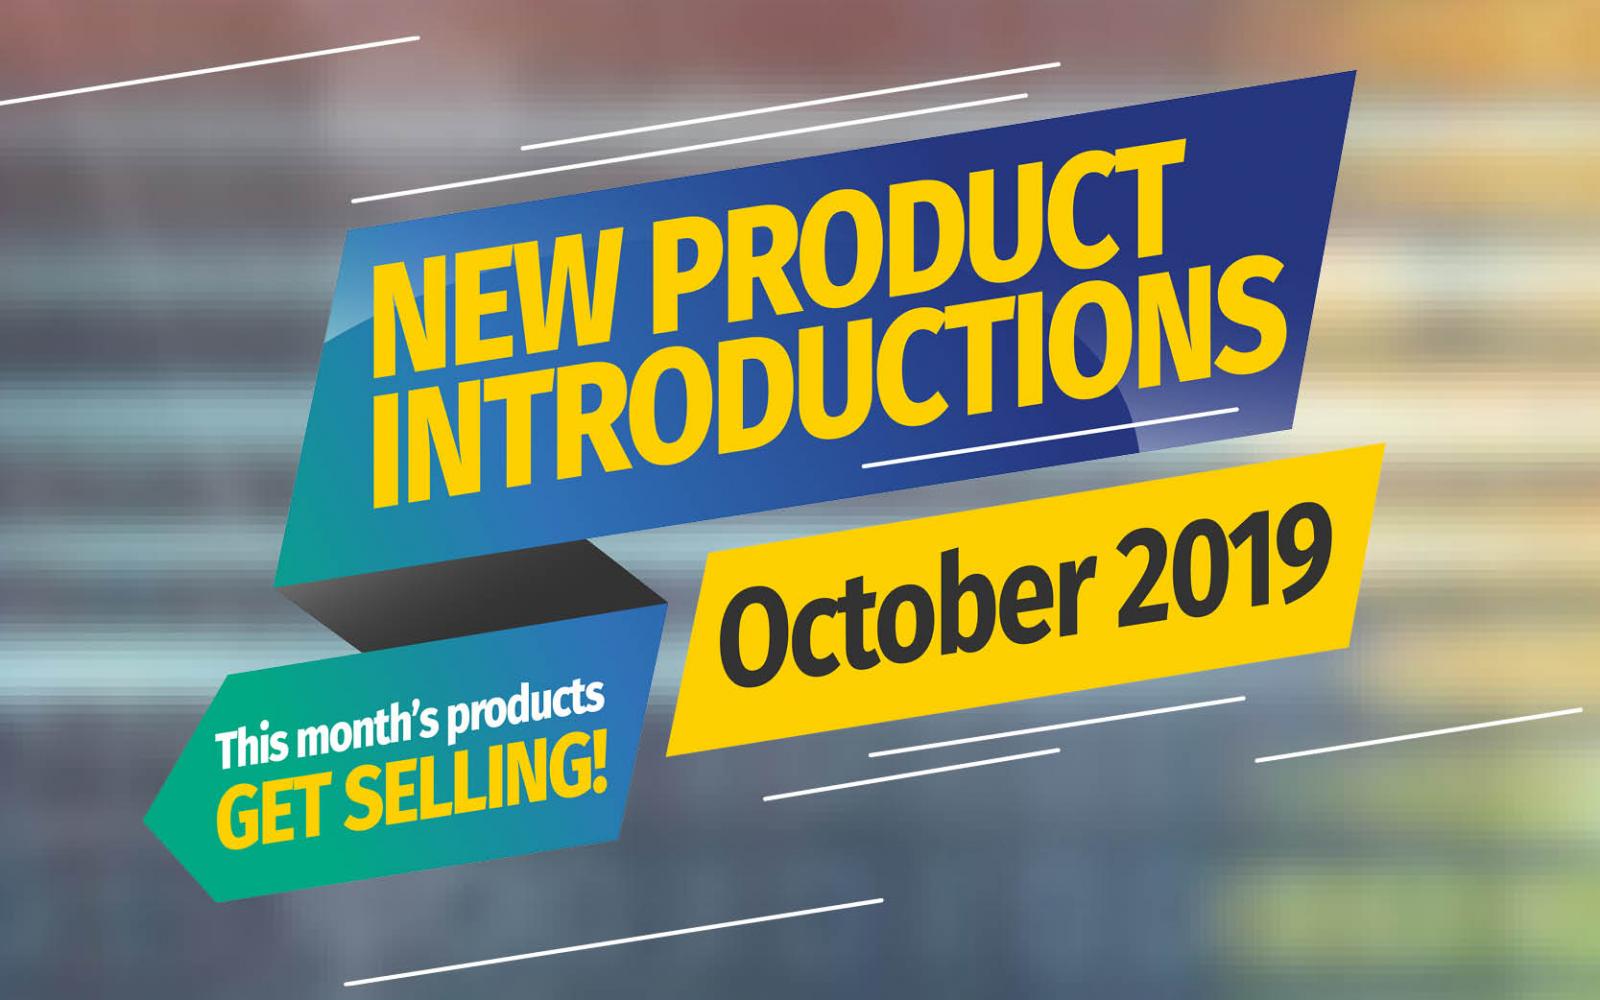 Featured Image: Neue Produkteinführungen - Oktober 2019